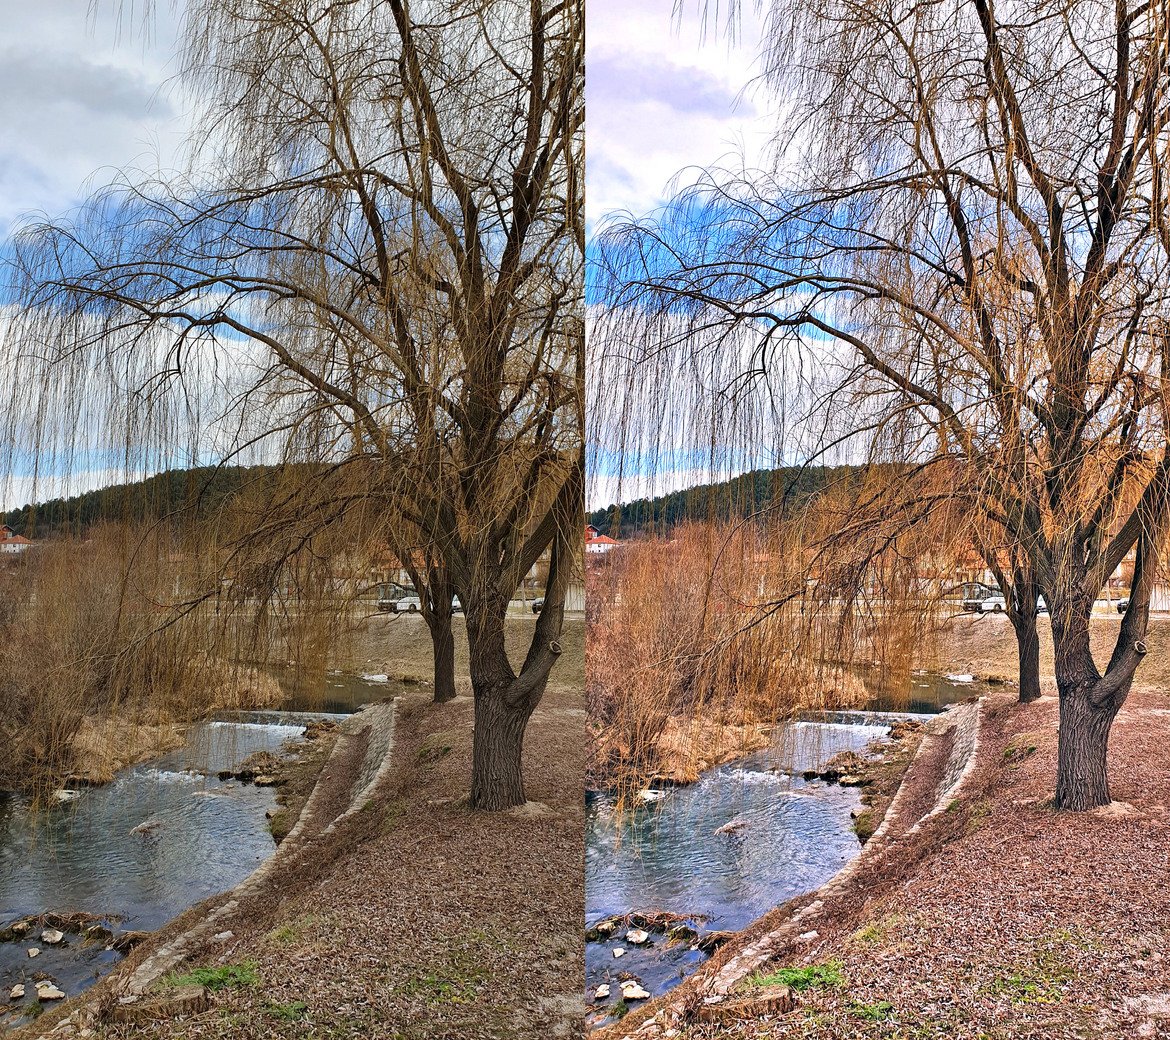 Камерата на Samsung S10+ прави много приятени кадри с точни и реални цветове, добра експозиция и отличаващи се детайли. Това означава, че после лесно се редактира до цветен и ярък кадър, какъвто обичат социалните мрежи. Отляво можете да видите необработена снимка, а отдясно - резултатът след няколко секунди донастройване. 